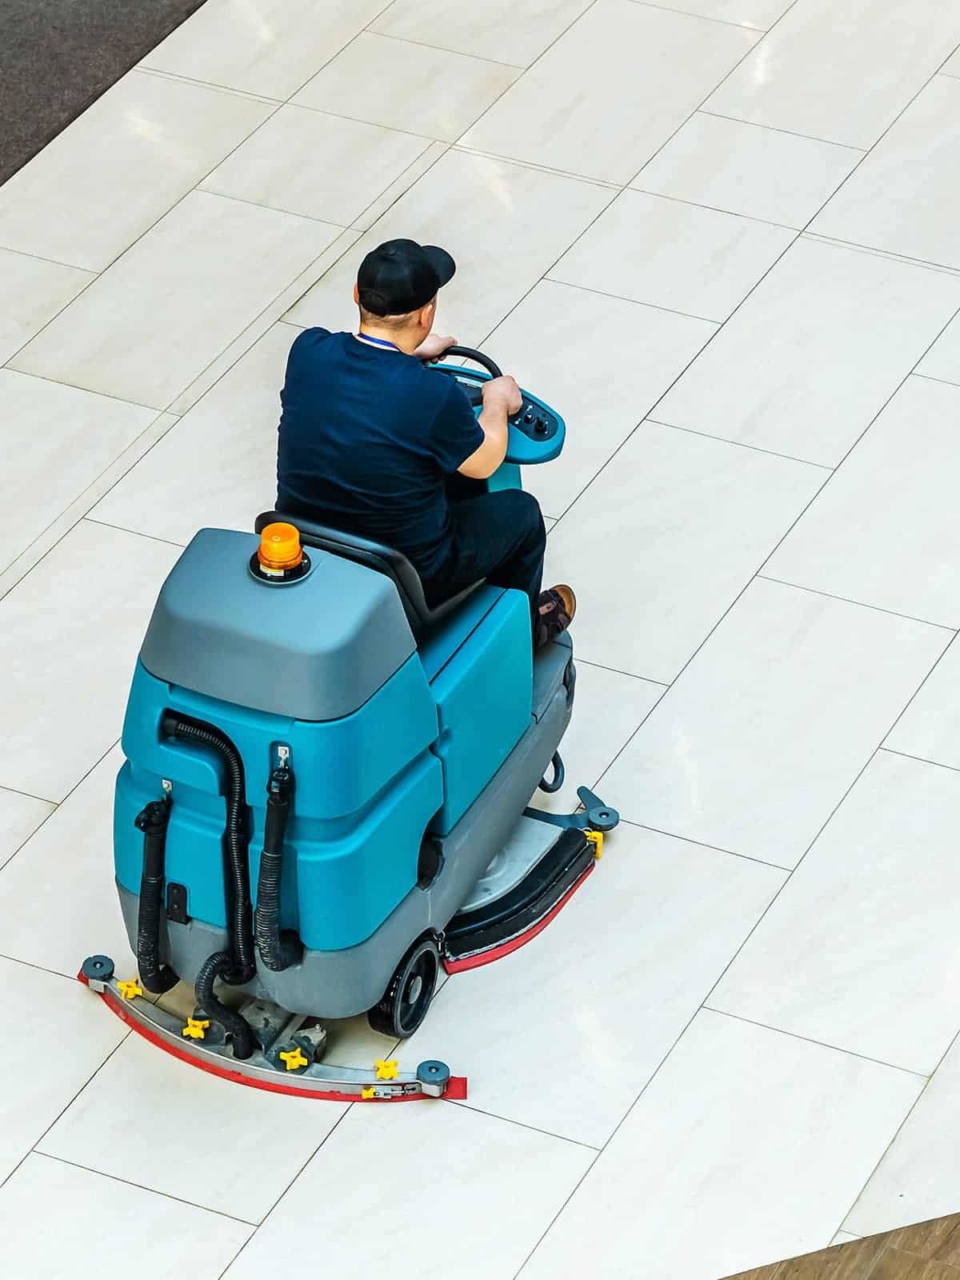 Man riding floor care machine